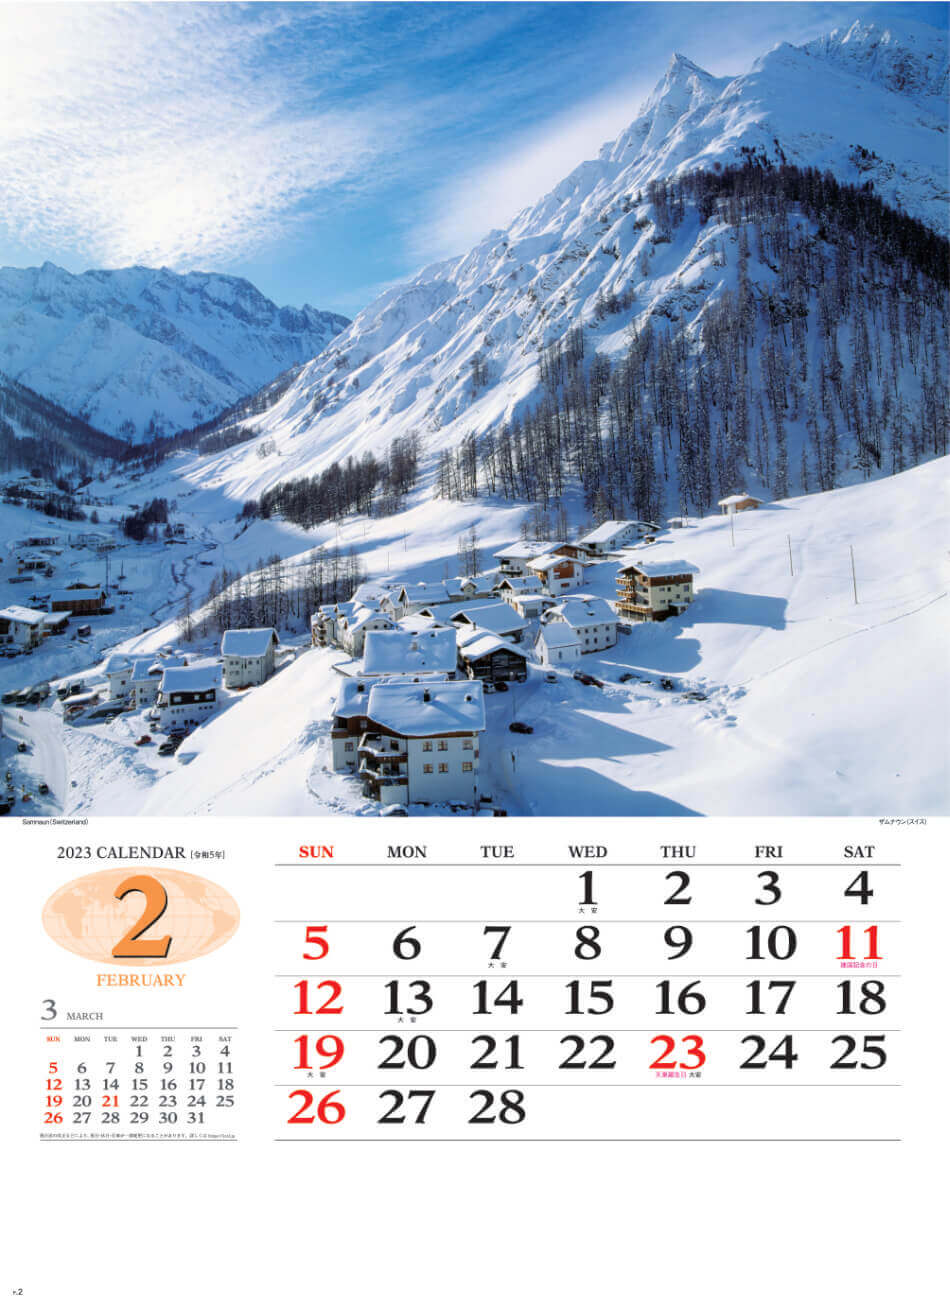 2月 ザムナウン(スイス) 世界の景観 2023年カレンダーの画像